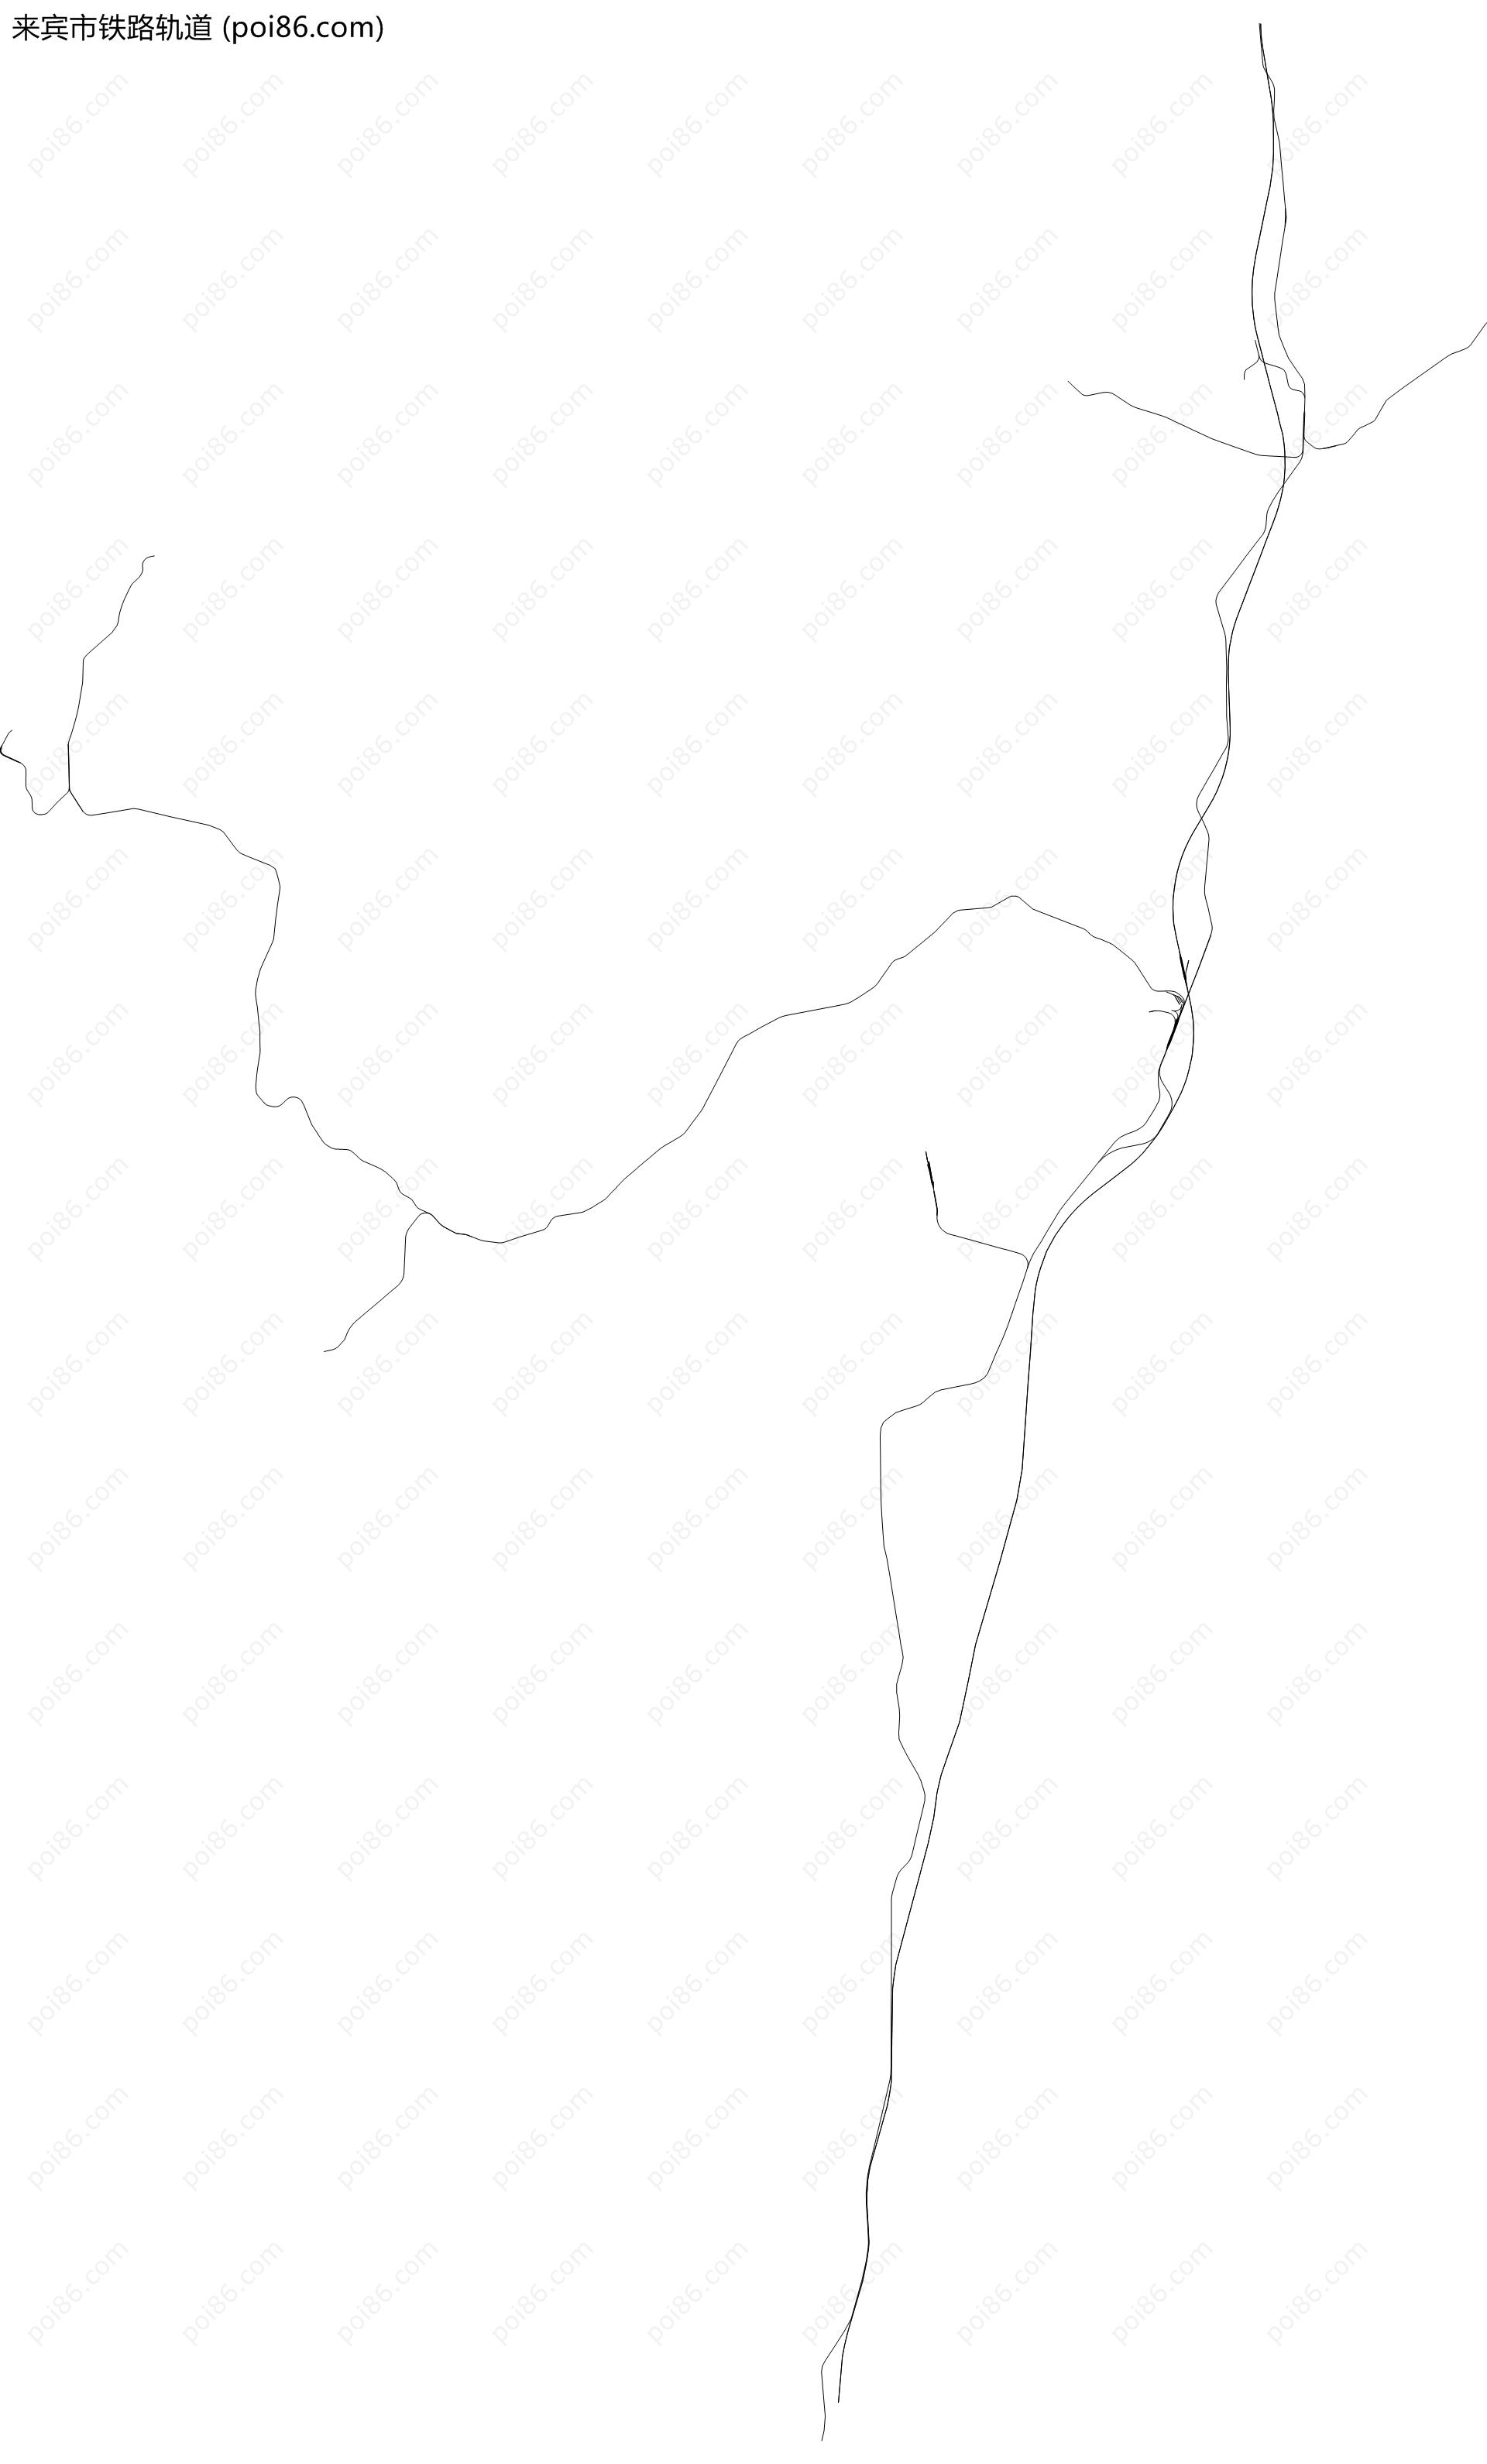 来宾市铁路轨道地图